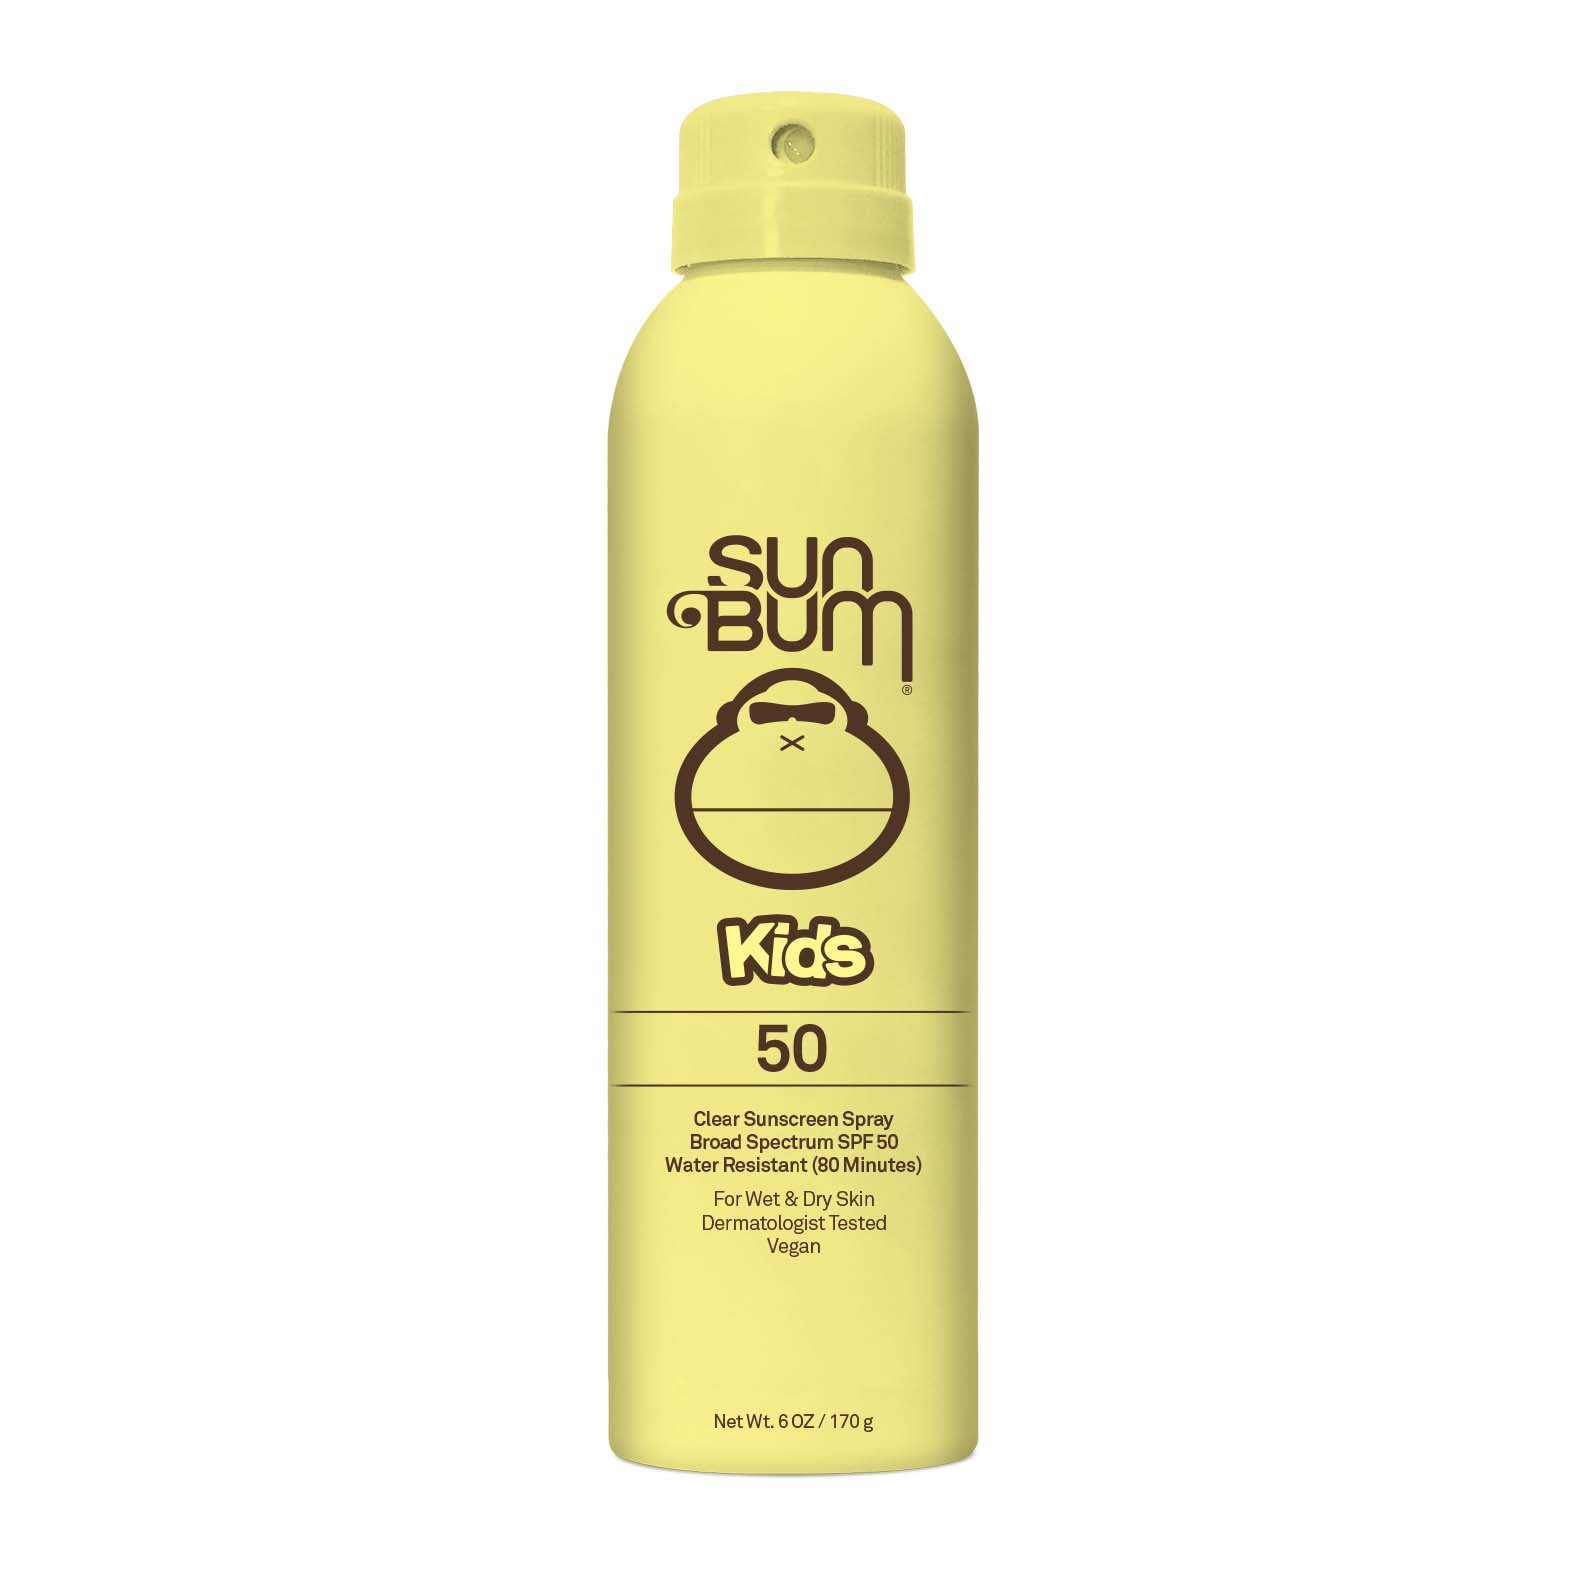 Sun Bum Kids Clear Sunscreen Spray - SPF 50 - Shop Sunscreen & Self Tanners  at H-E-B